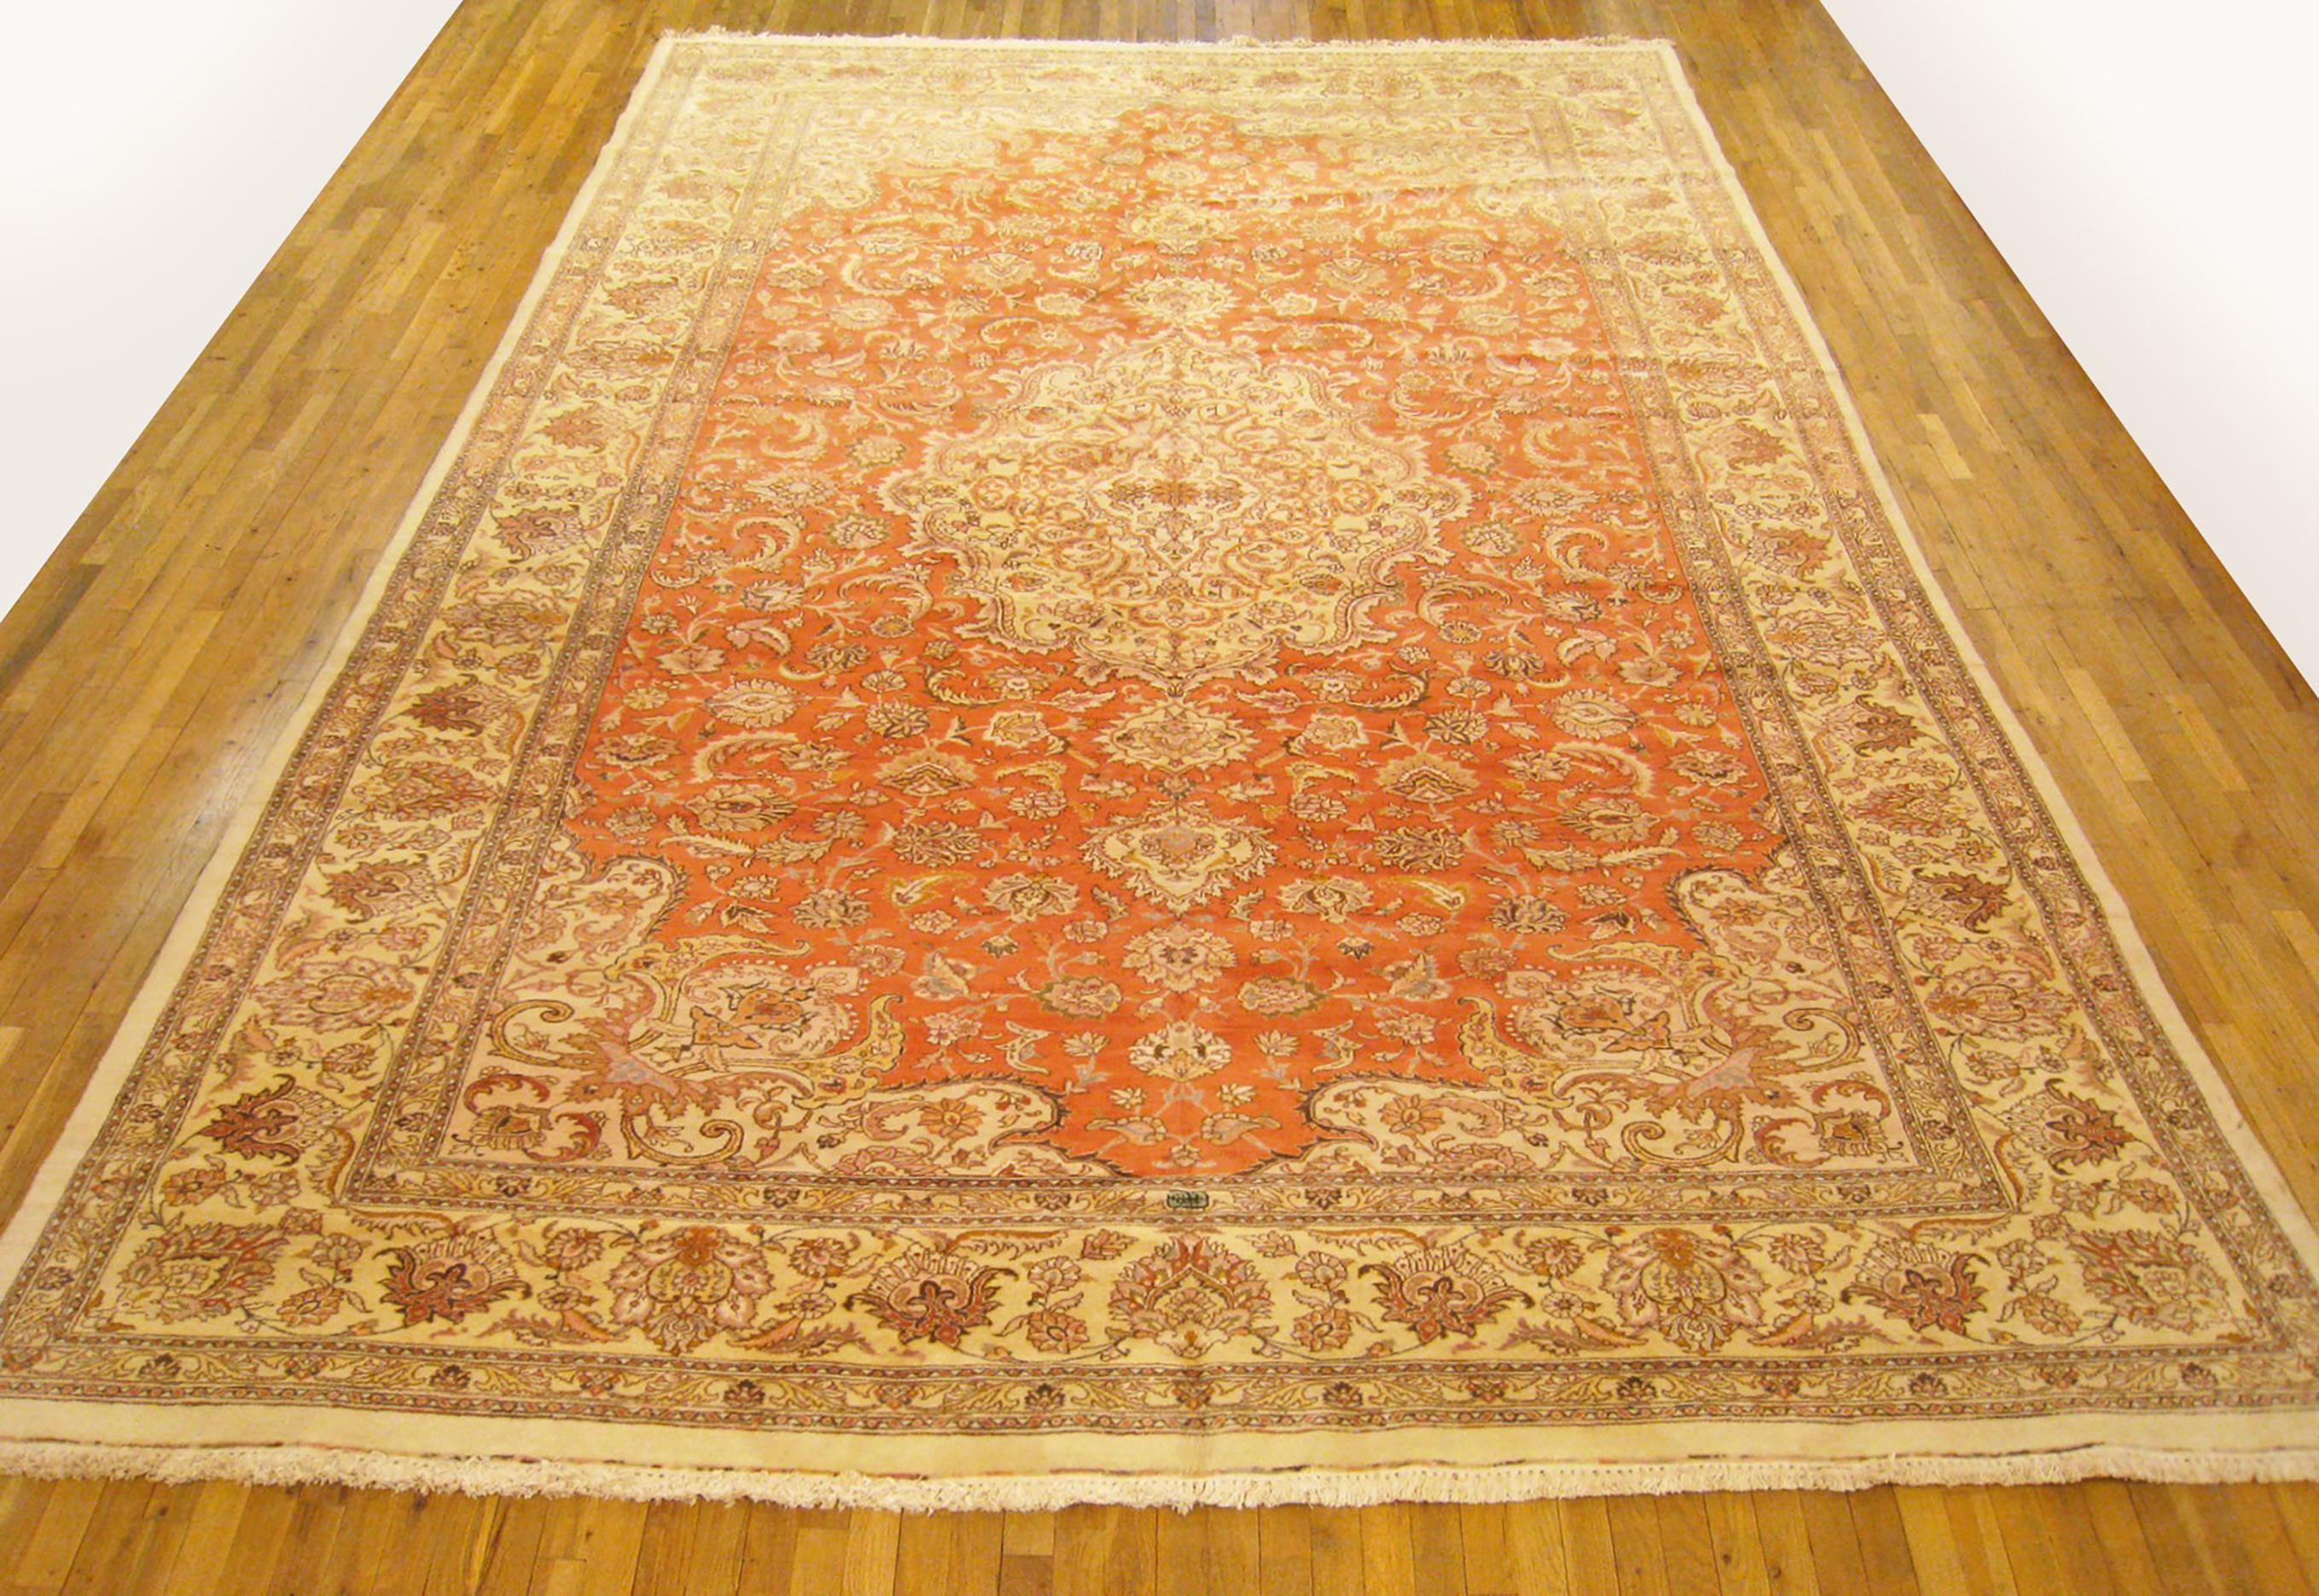 Vintage Persisch Tabriz orientalischen Teppich, circa 1950, großformatig.

Ein alter persischer Orientteppich aus Täbris, um 1950. Größe: 16'2